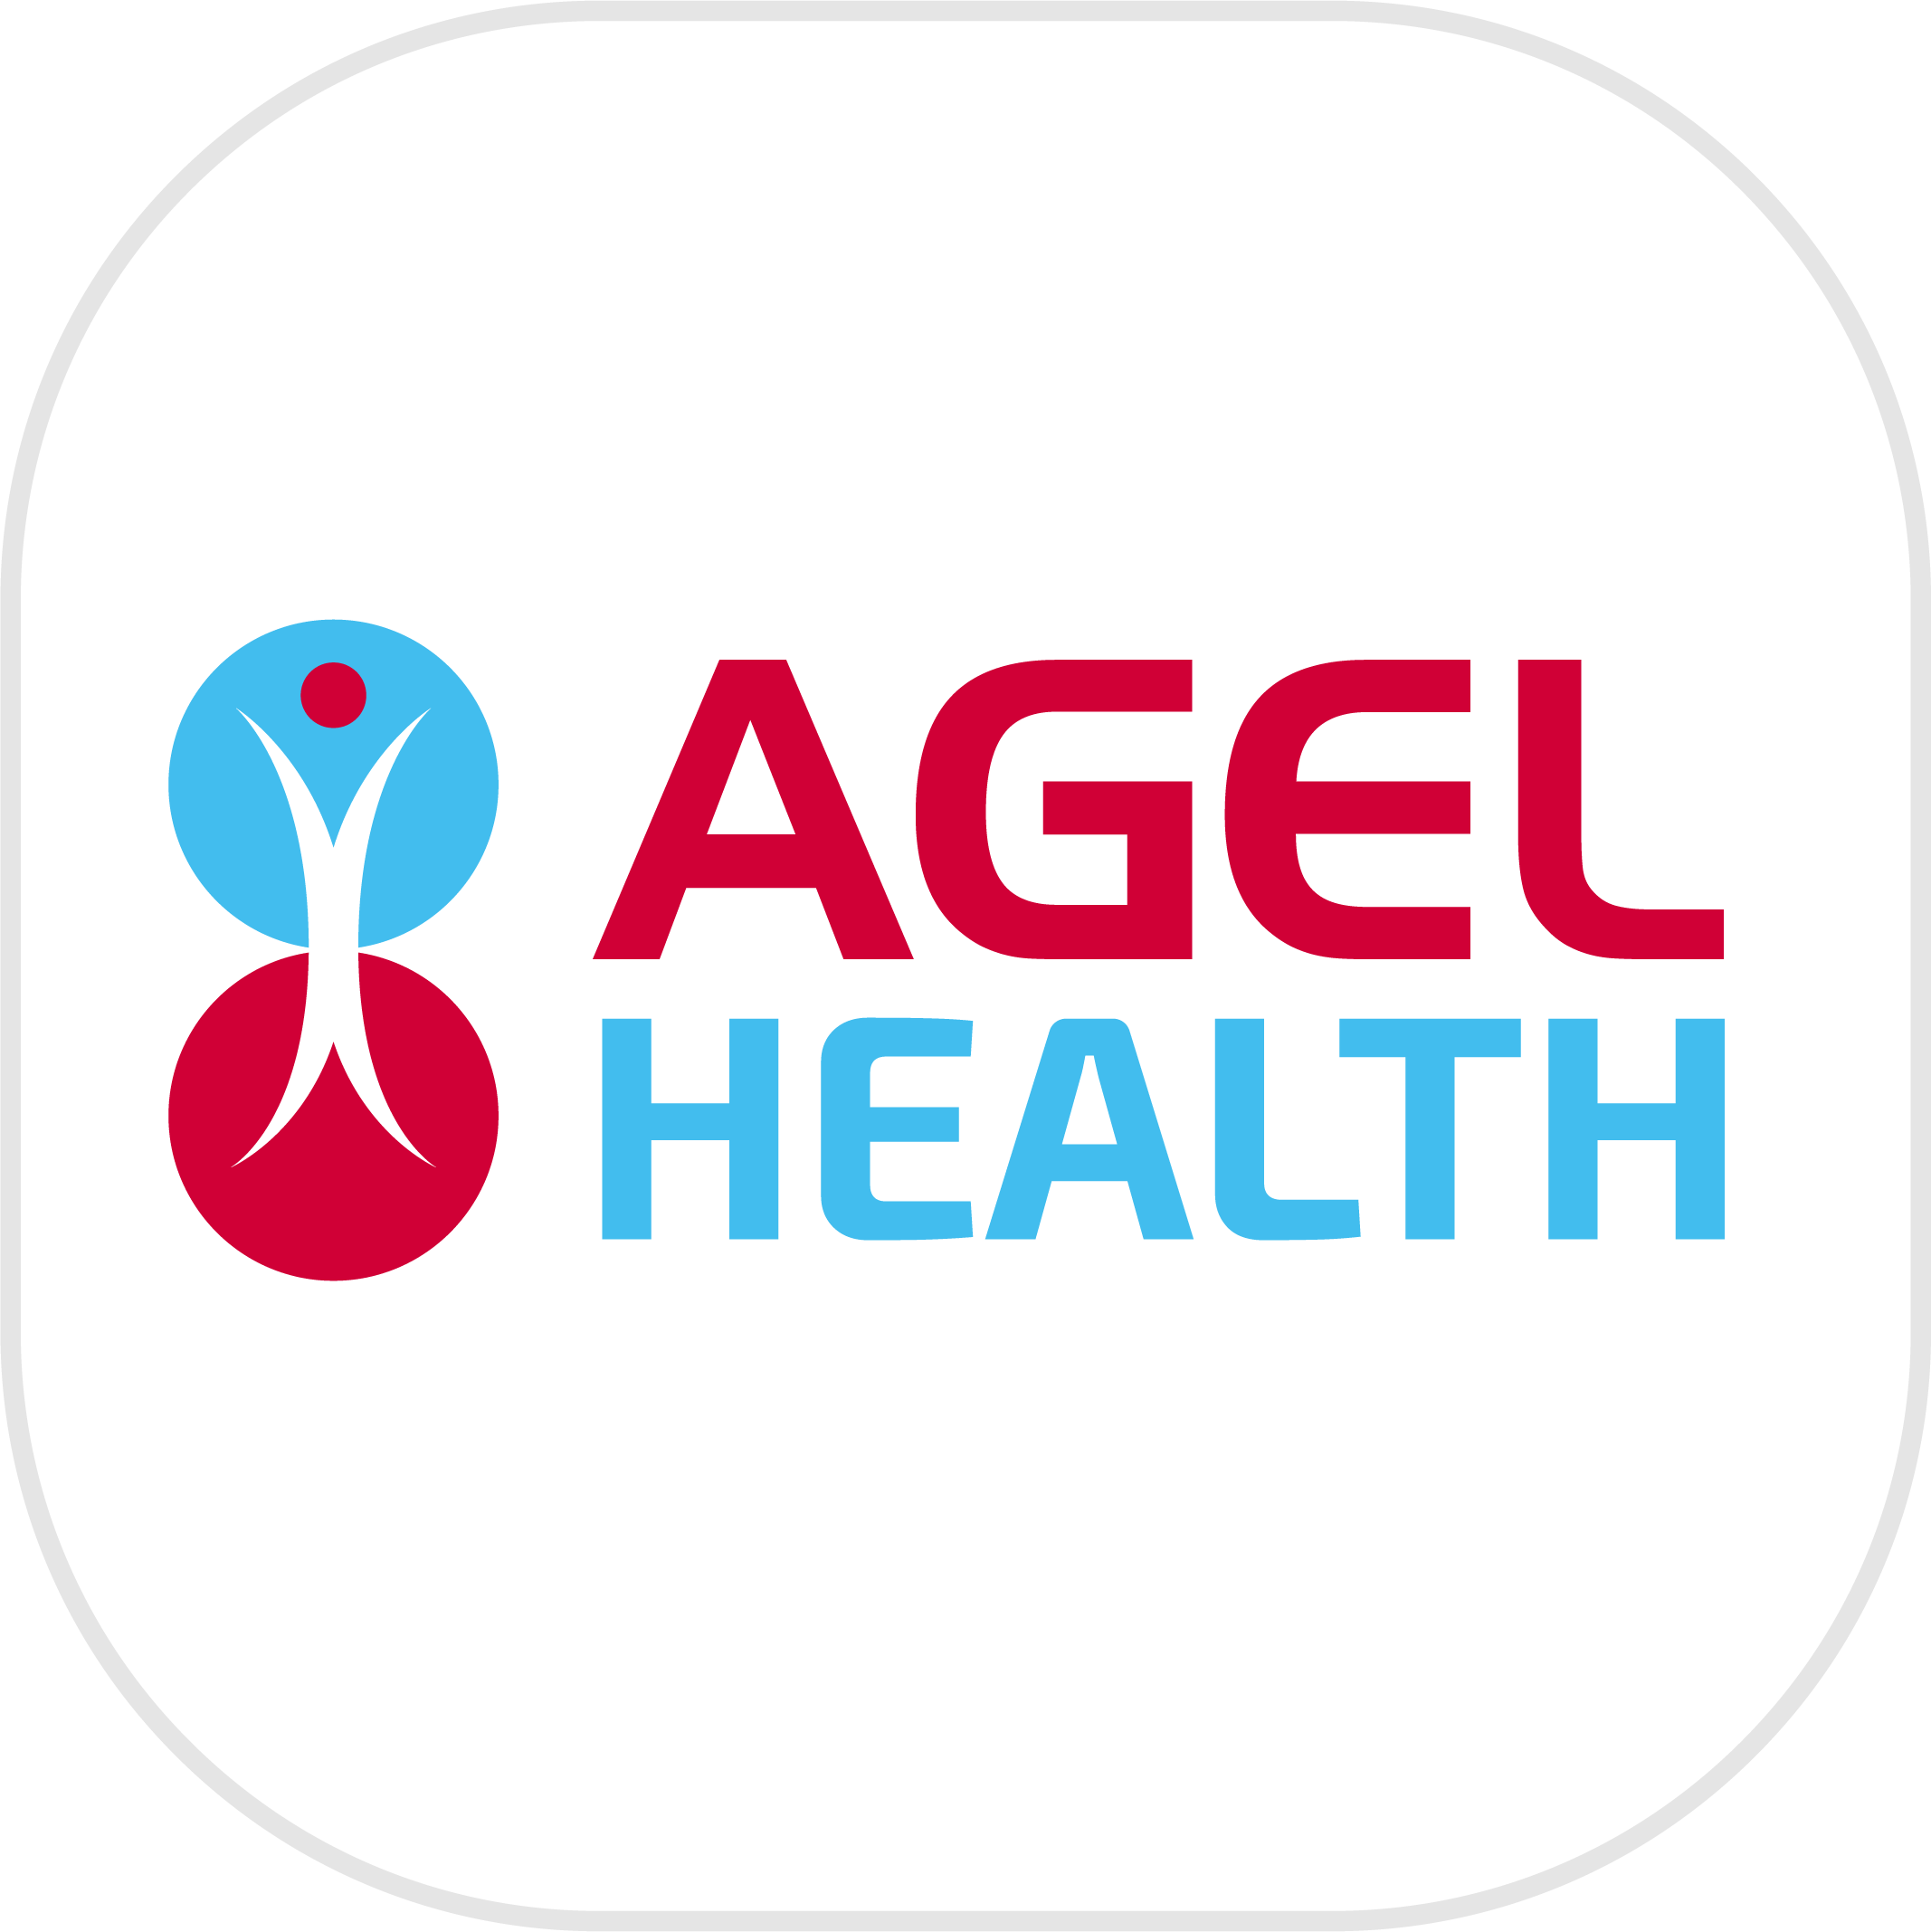 Agel Health